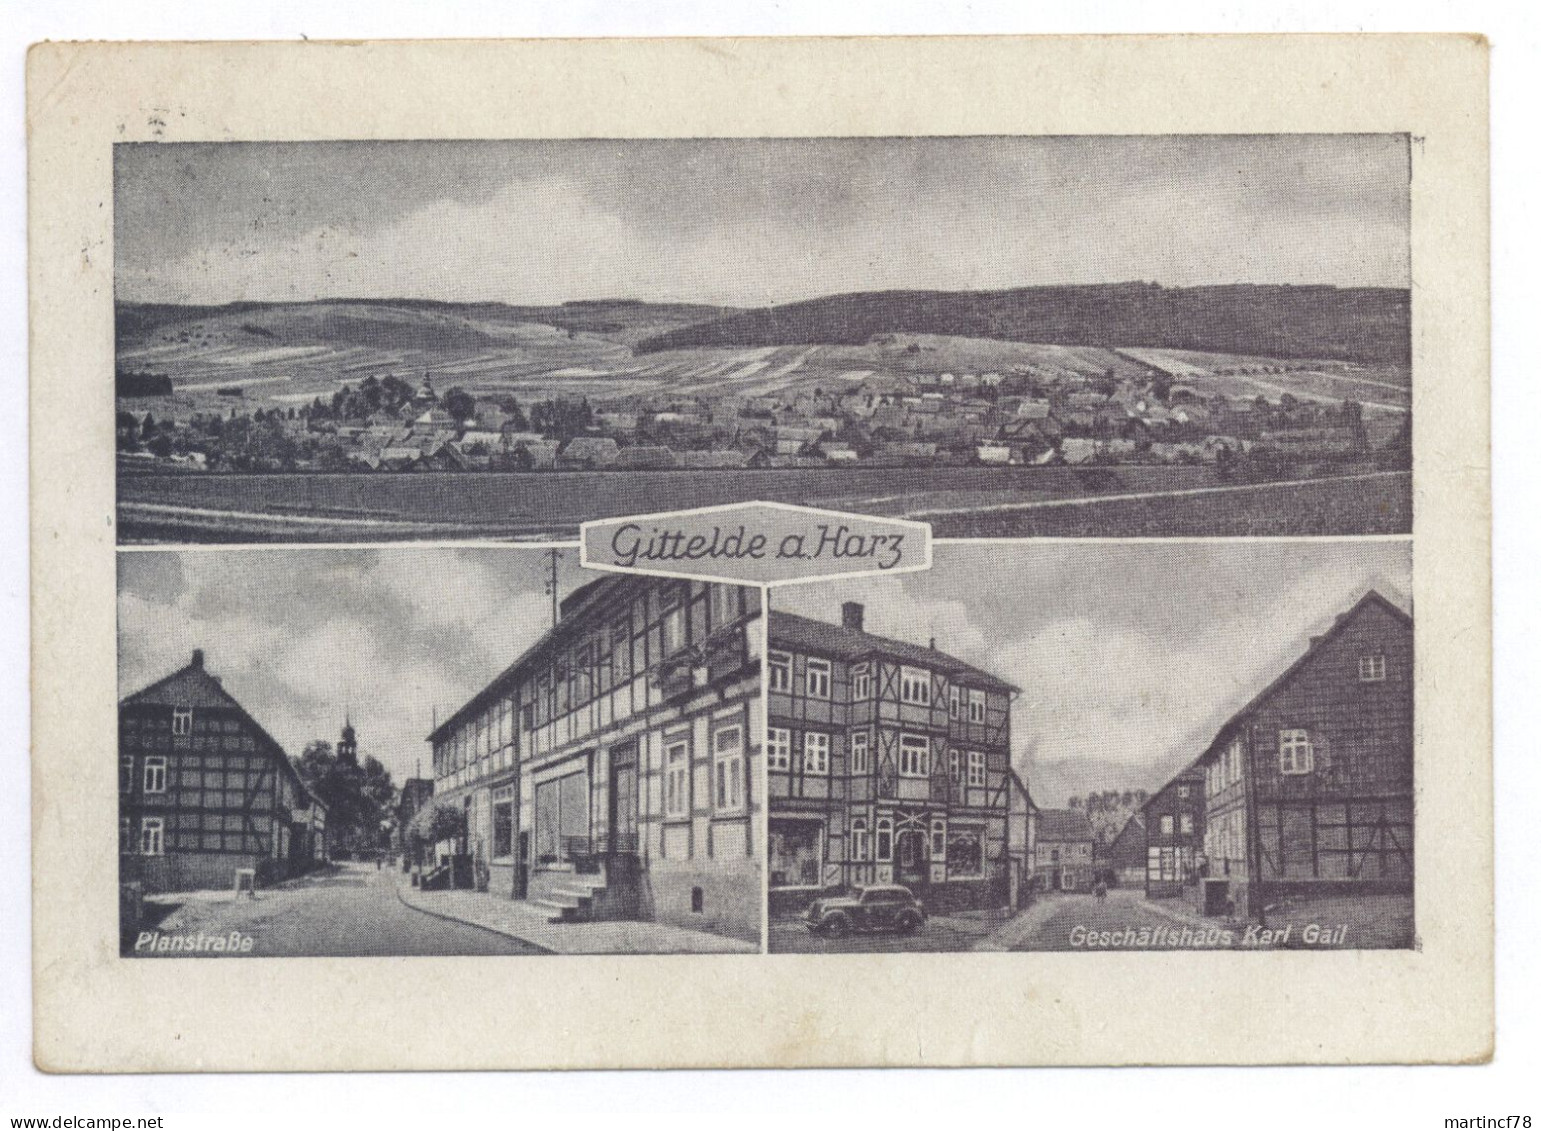 3371 Gittelde A. Harz über Seesen 1954 Lkr Göttingen - Bad Grund